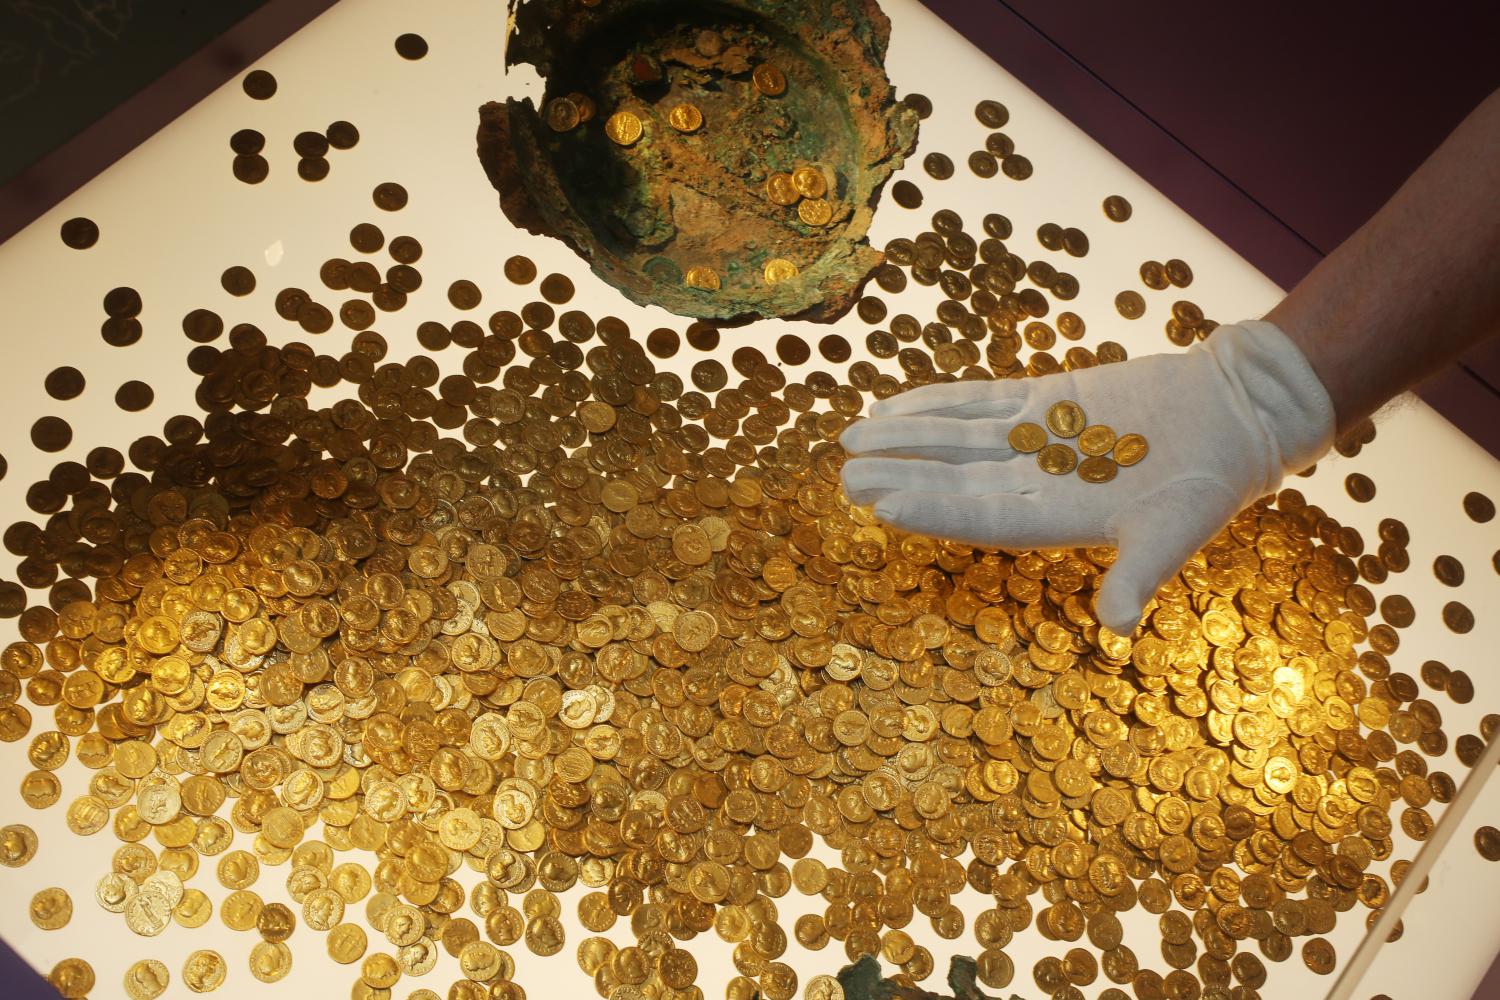 Der Numismatiker Karl-Josef Gilles platziert im Landesmuseum Trier  römische Goldmünzen in einer Vitrine. Es handelt sich um den weltweit größte Goldschatz der römischen Kaiserzeit: 18,5 Kilo schwer und rund 2600 Münzen stark. Vor 25 Jahren wurde er in Trier entdeckt.